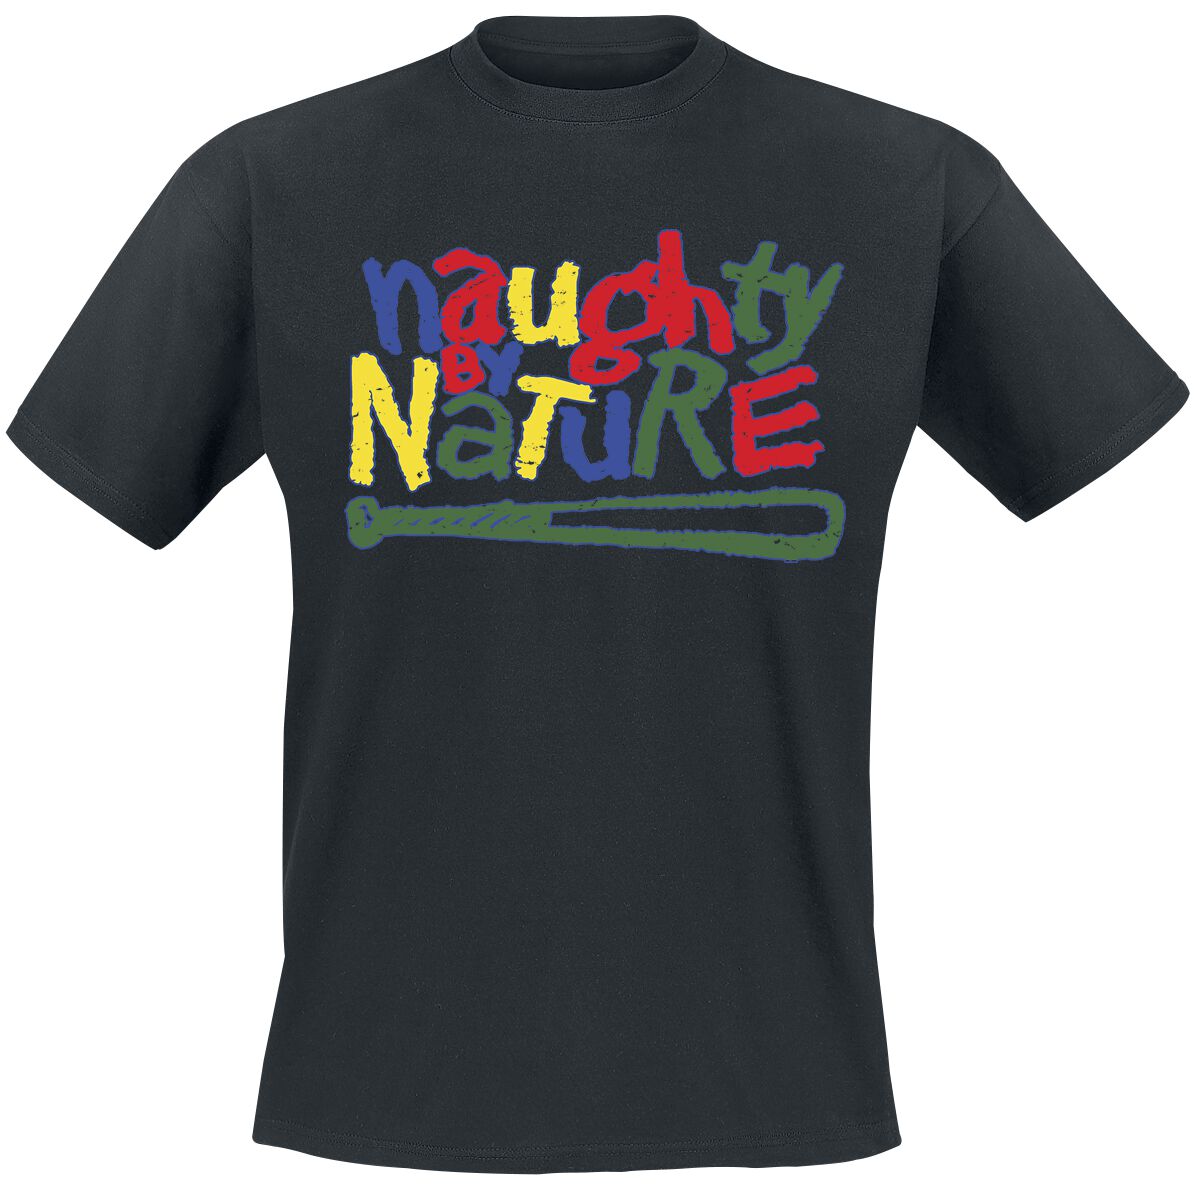 Naughty by Nature T-Shirt - Classic Colourful Logo - S bis 3XL - für Männer - Größe XL - schwarz  - Lizenziertes Merchandise!